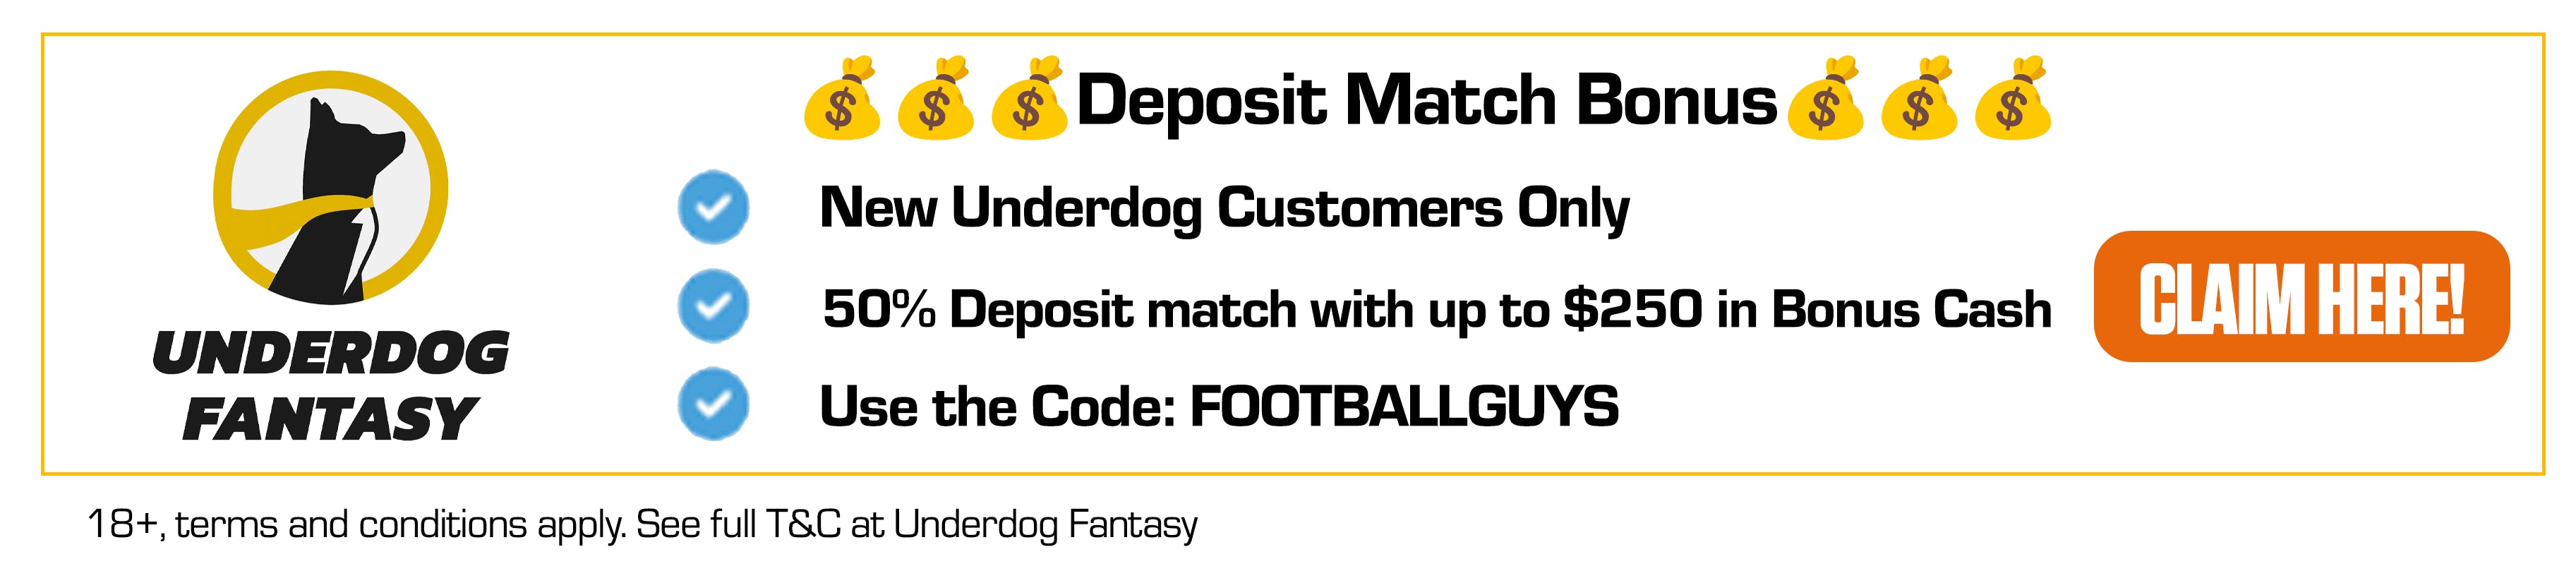 Underdog Deposit Match